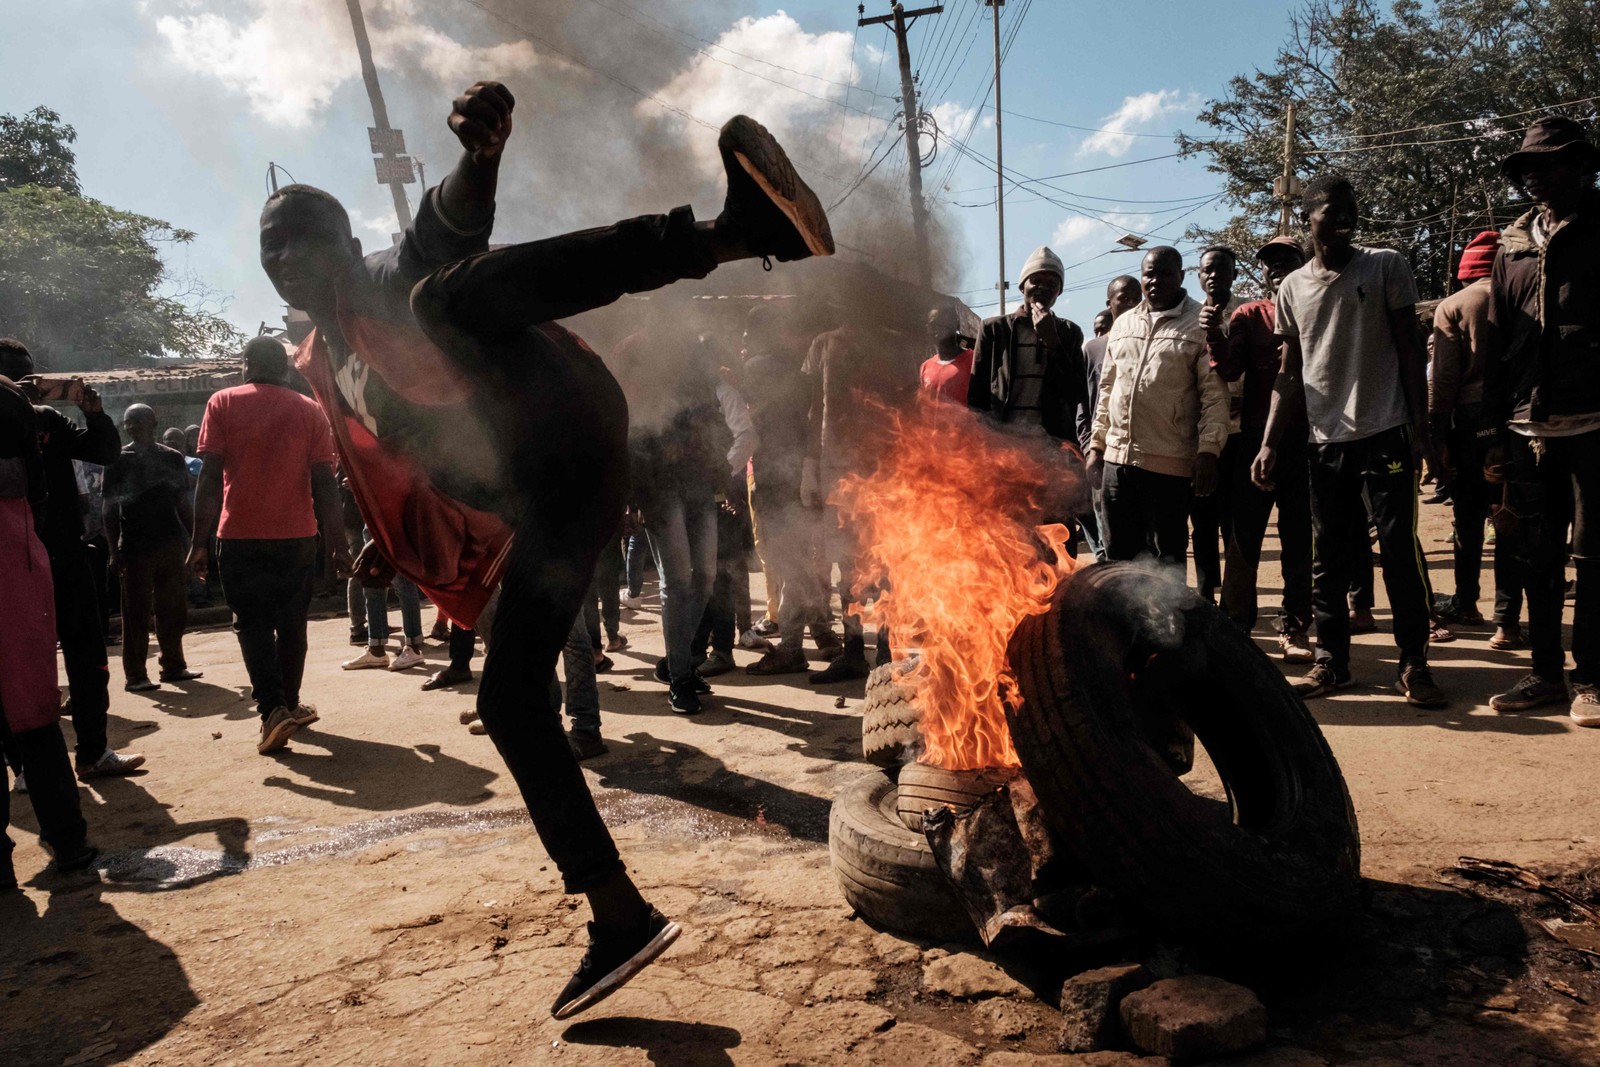 Manifestante gesticula ao lado de uma barricada em chamas durante um protesto contra o governo do Quênia, em Kibera, Nairóbi — Foto: YASUYOSHI CHIBA / AFP